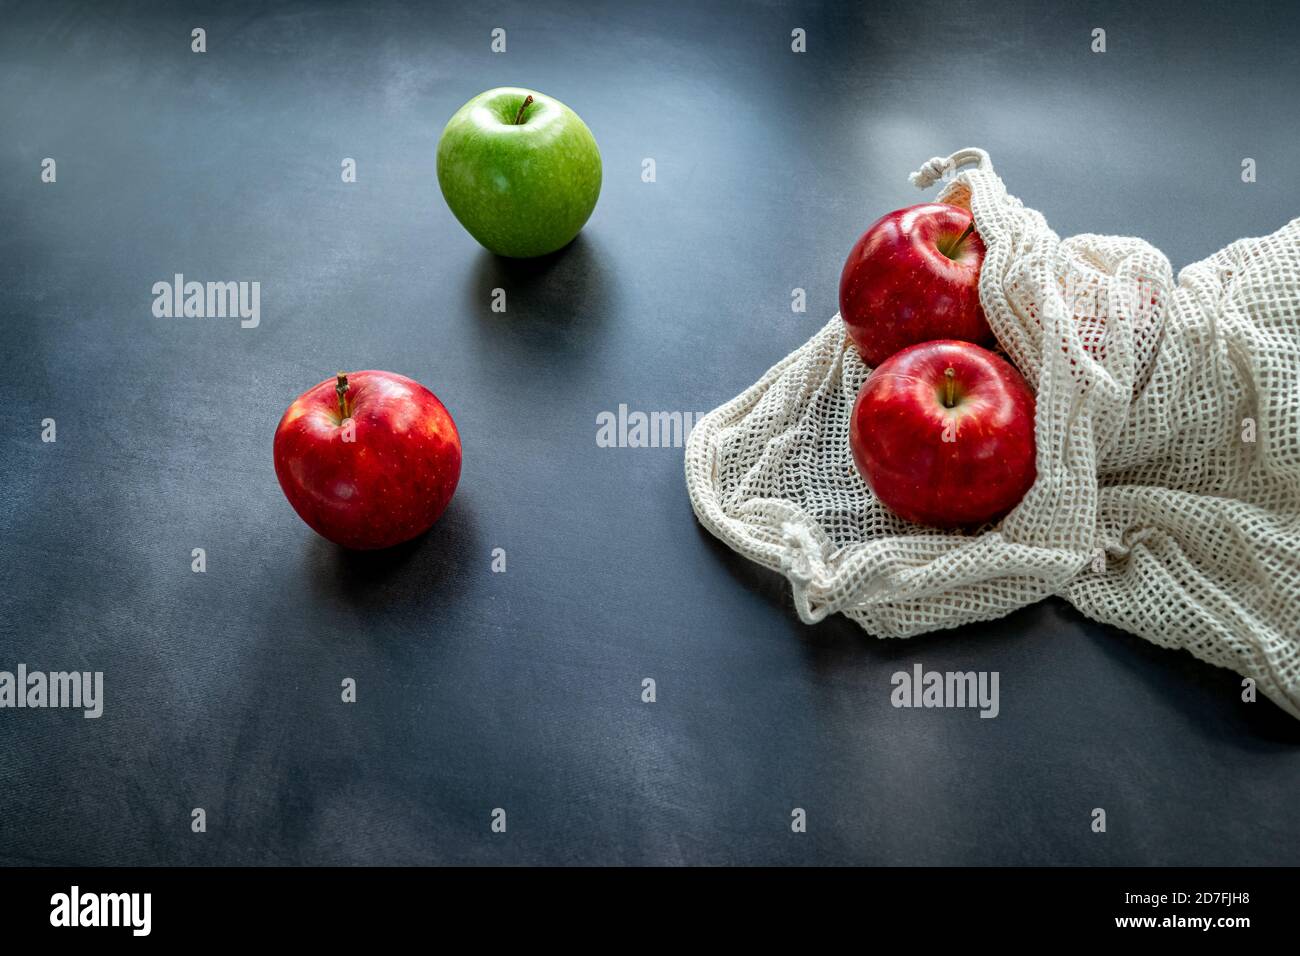 Manzanas rojas y verdes en una bolsa de malla de algodón sobre fondo oscuro. Concepto de compra de sostenibilidad y cero residuos. Vista superior Foto de stock